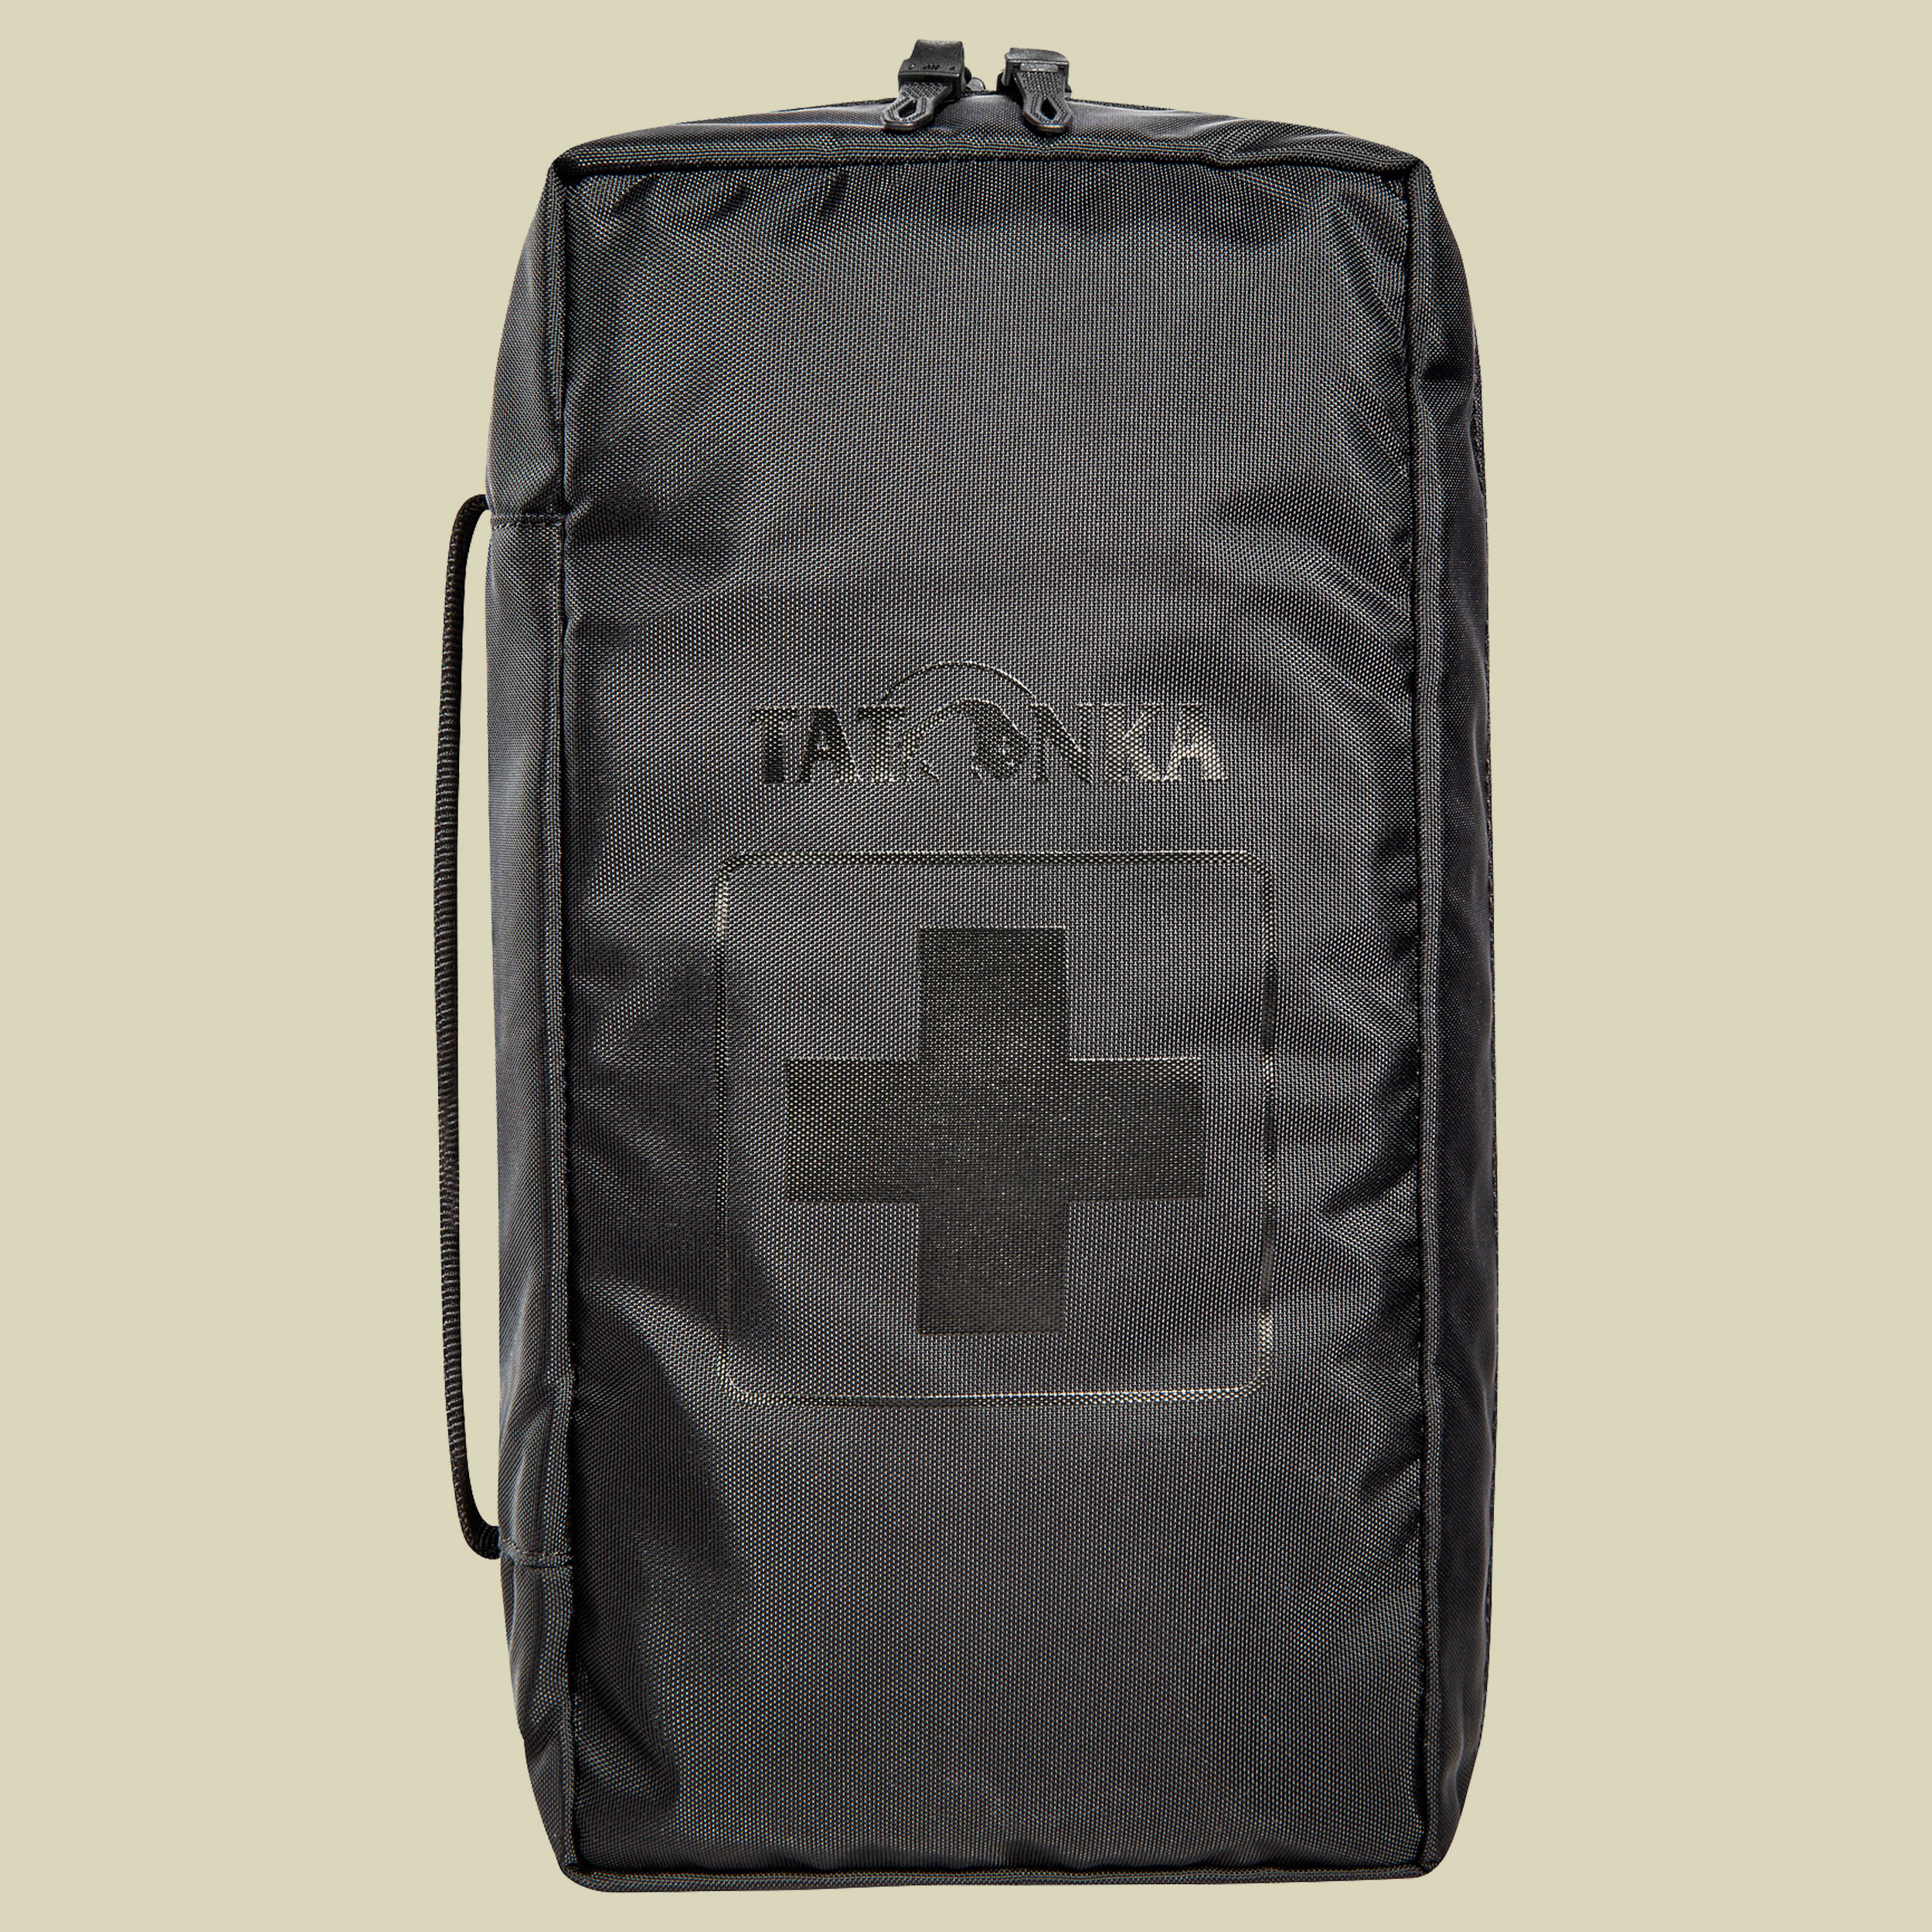 First Aid M Farbe schwarz